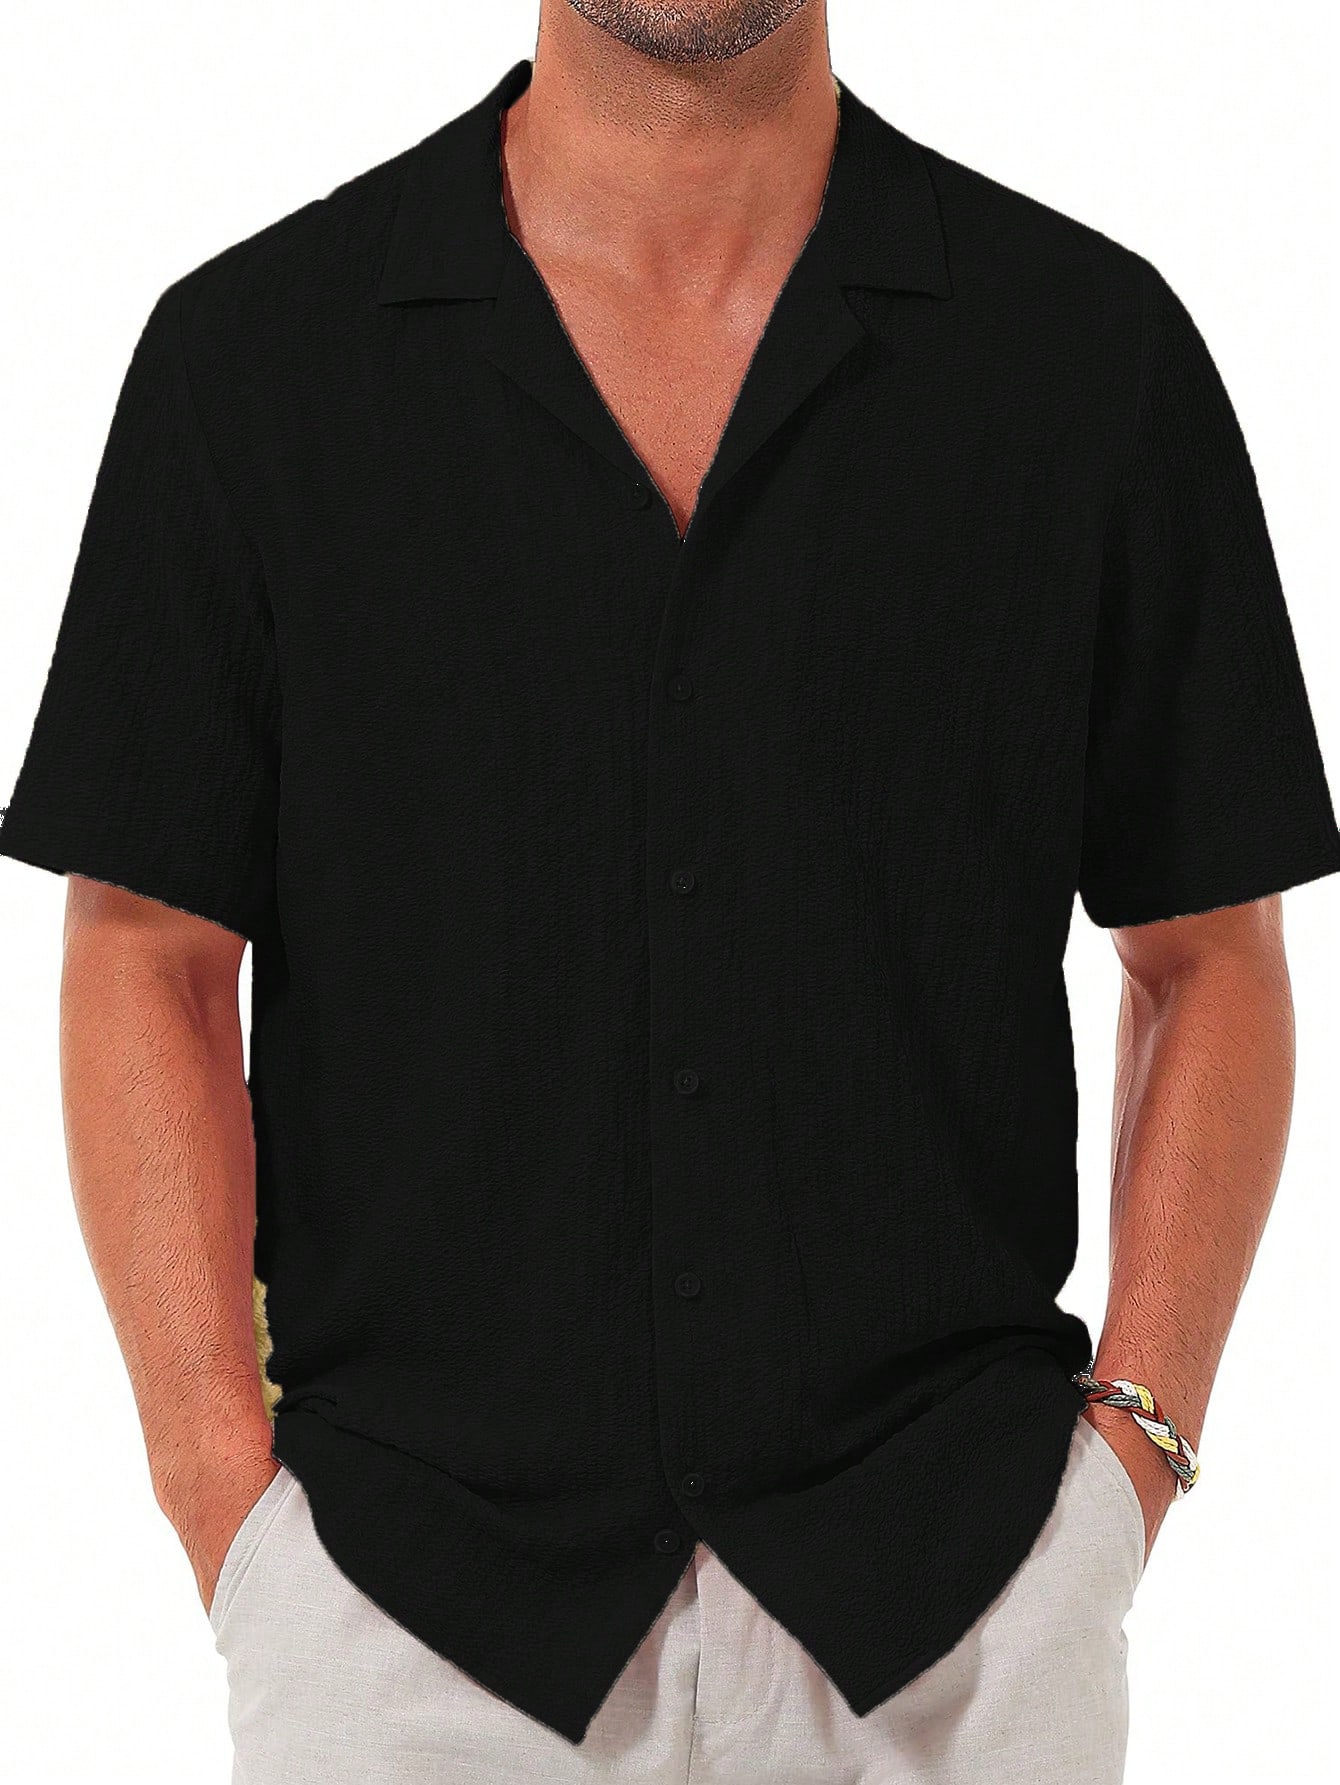 Мужская повседневная рубашка с коротким рукавом на пуговицах, черный футболка мужская с принтом якоря модная хлопковая рубашка оверсайз с пуговицами свободная одежда с коротким рукавом лето